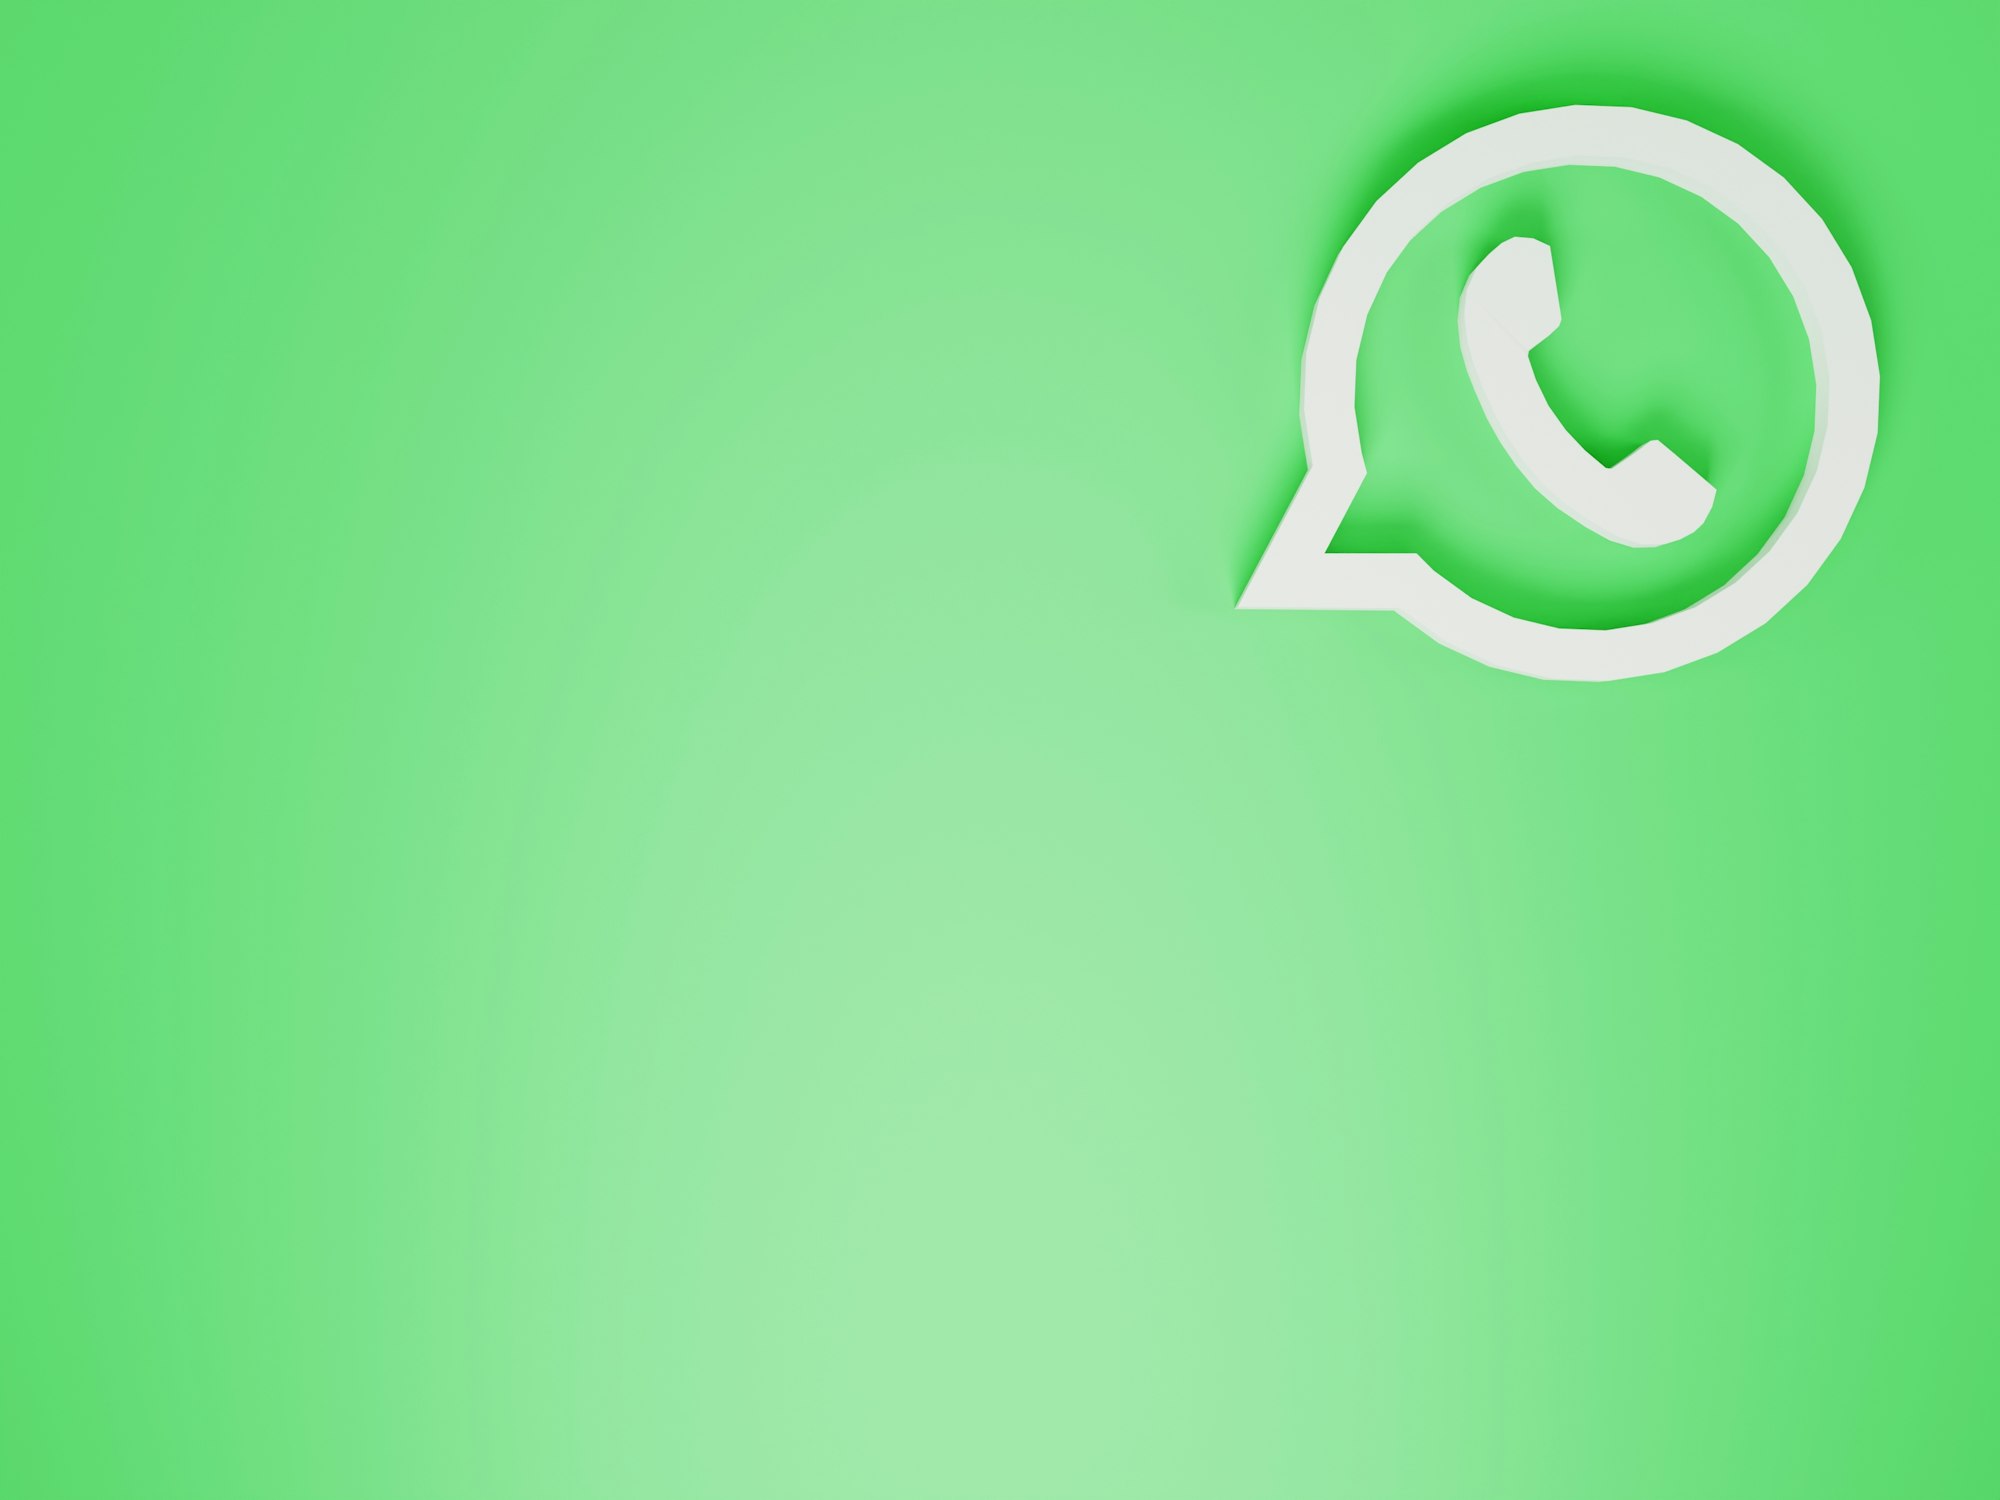 Logo de WhatsApp sobre un fondo verde.